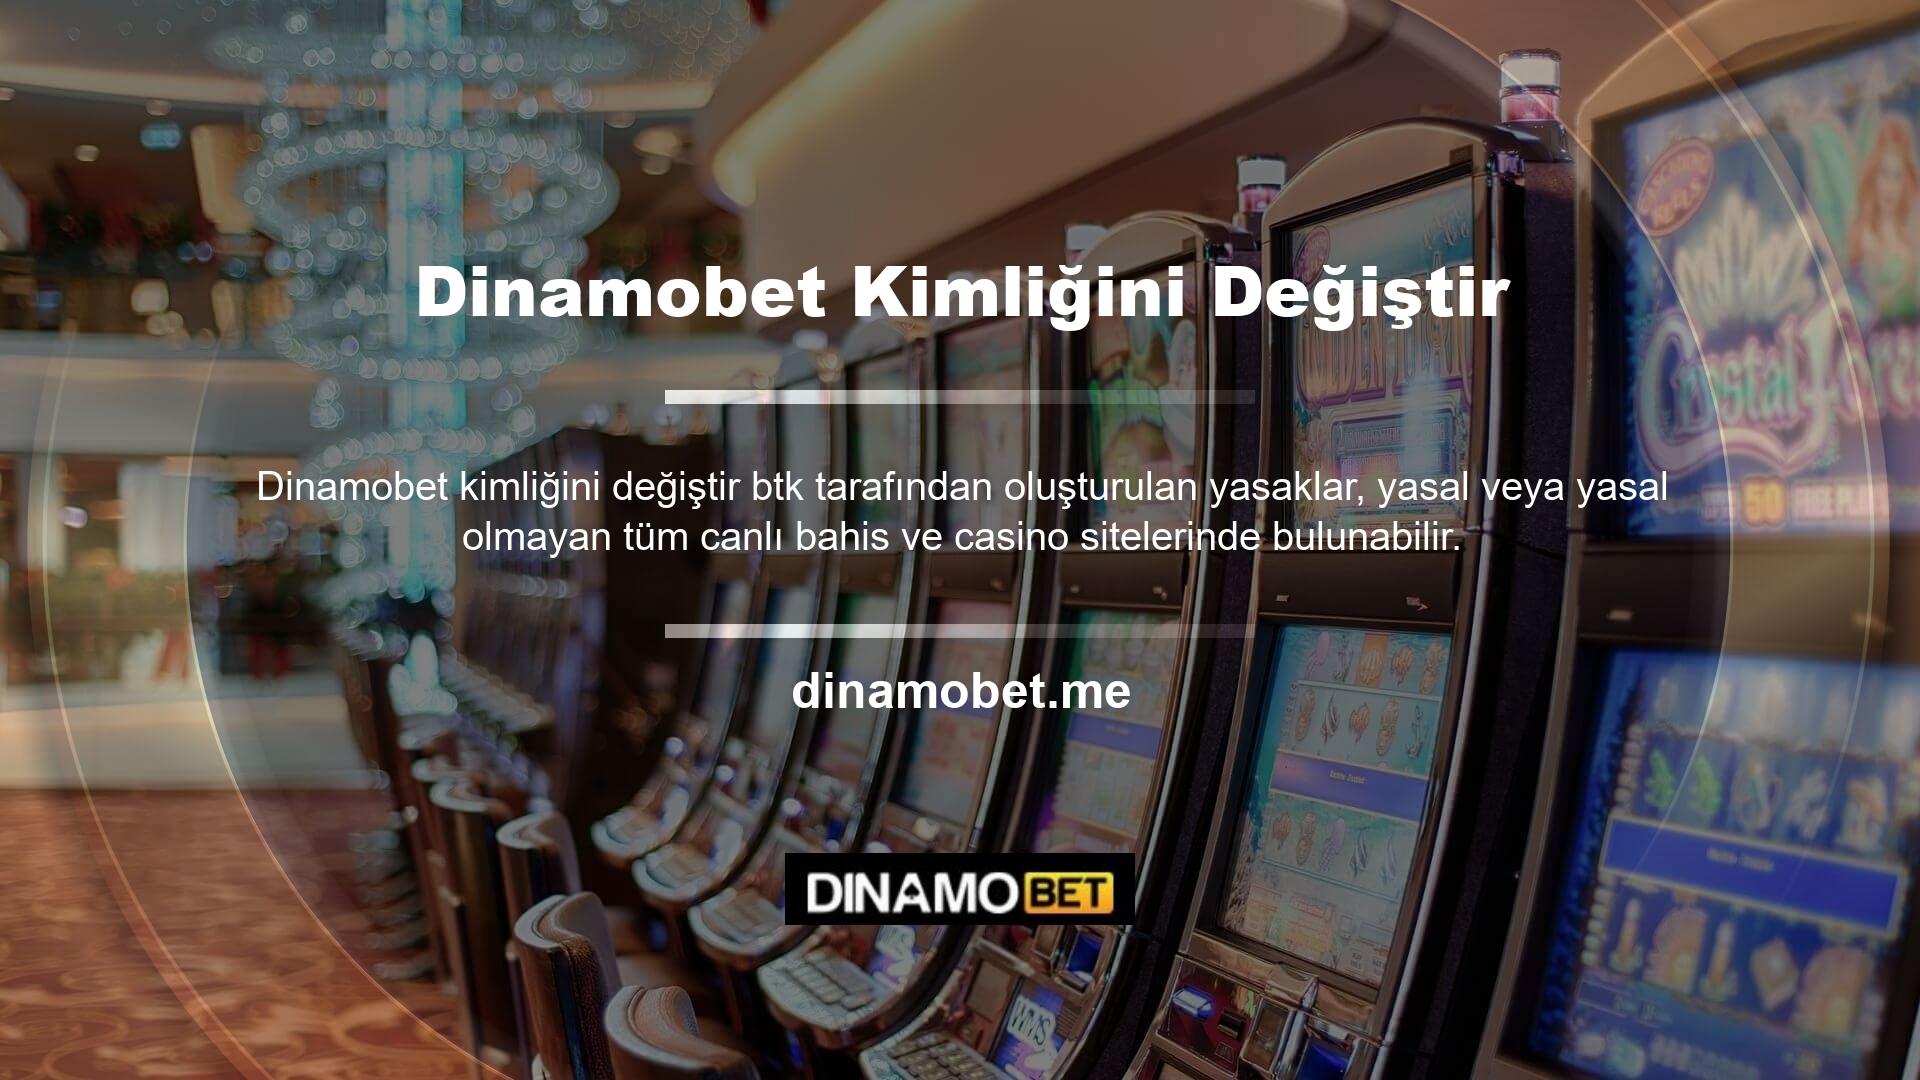 Dinamobet web sitesi, giriş adresini güncelleyerek sorunu ilk günden itibaren düzeltti